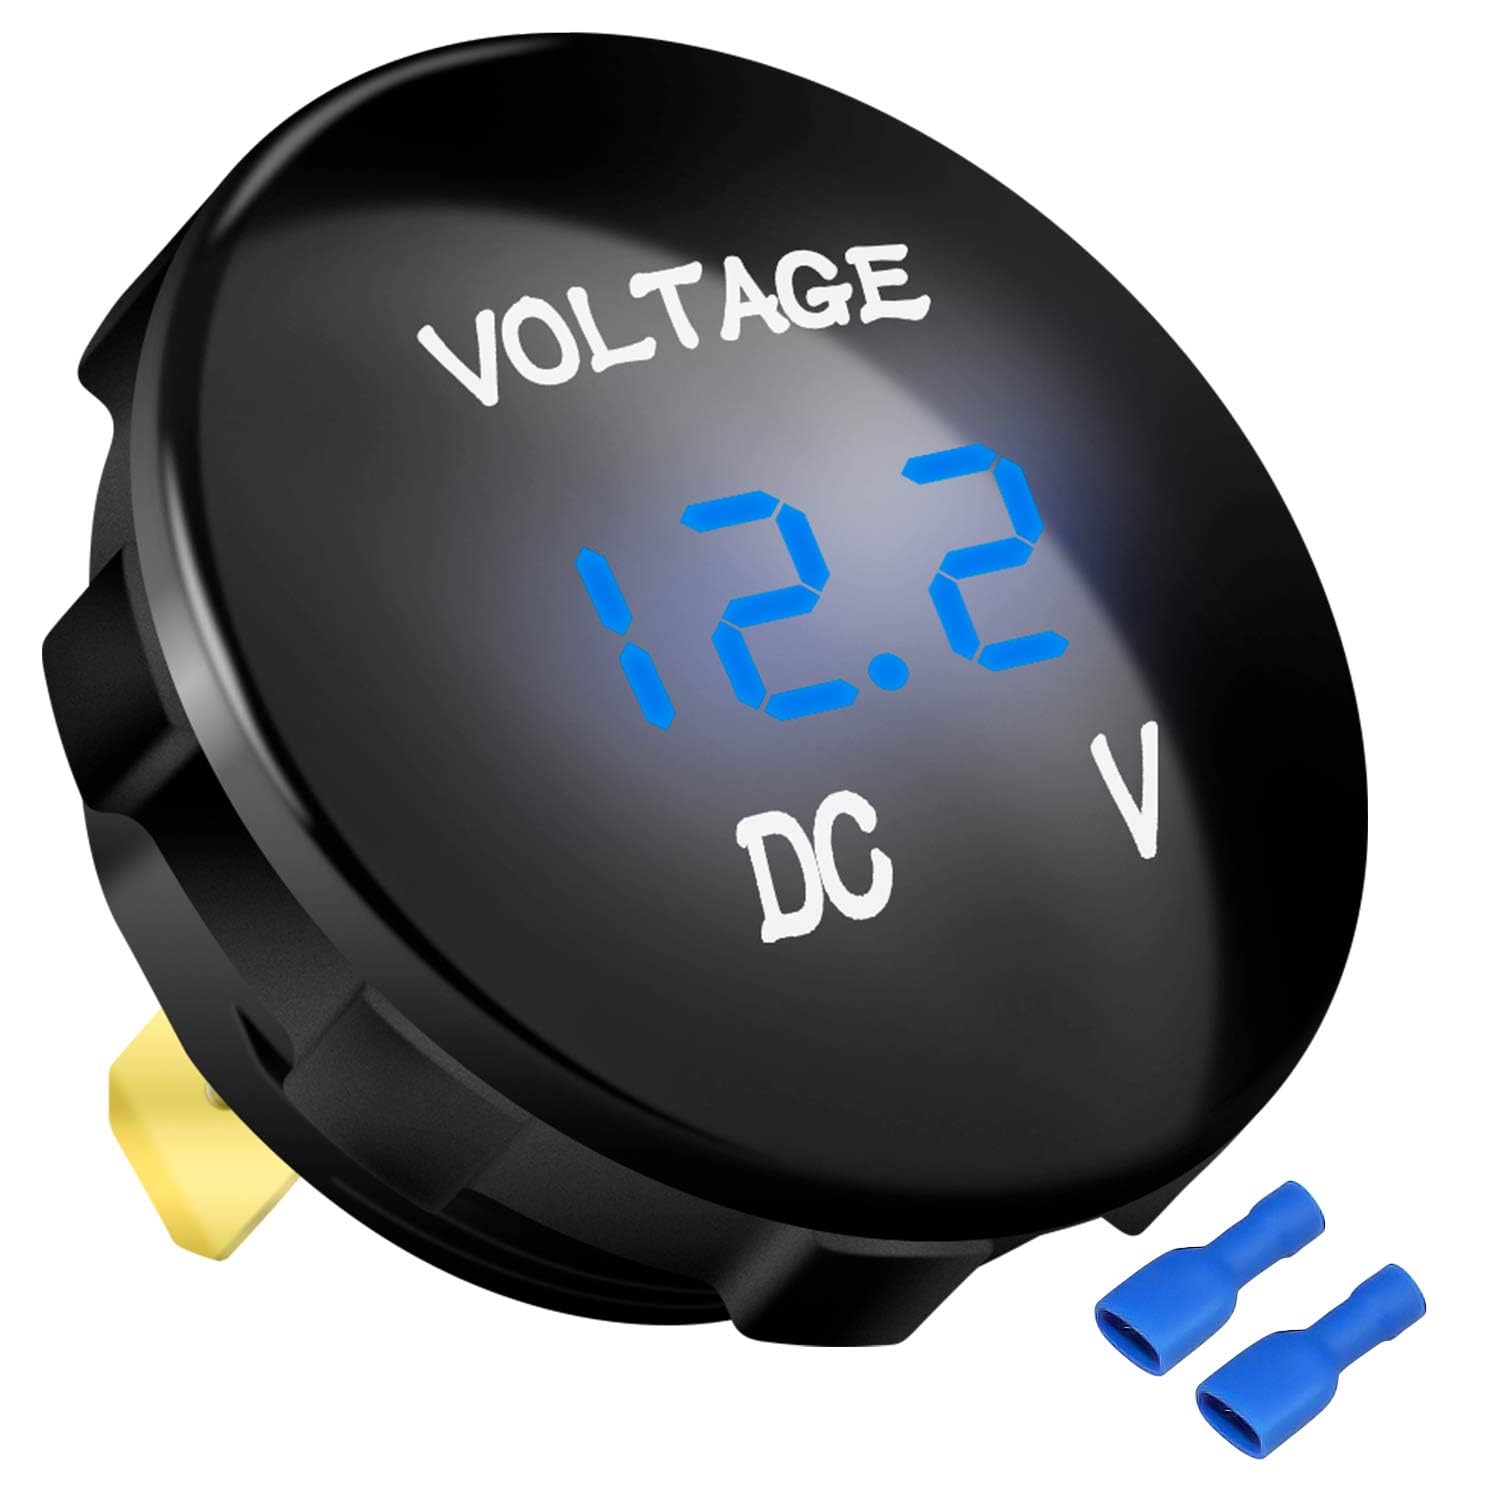  DC Multifunction Battery Monitor Meter, 6.5-100V, 0-100A  (Widely Applied to 12V/24V/48V RV/Car Battery) LCD Display Digital Current  Voltage Solar Power Meter Multimeter Voltmeter Ammeter : Automotive